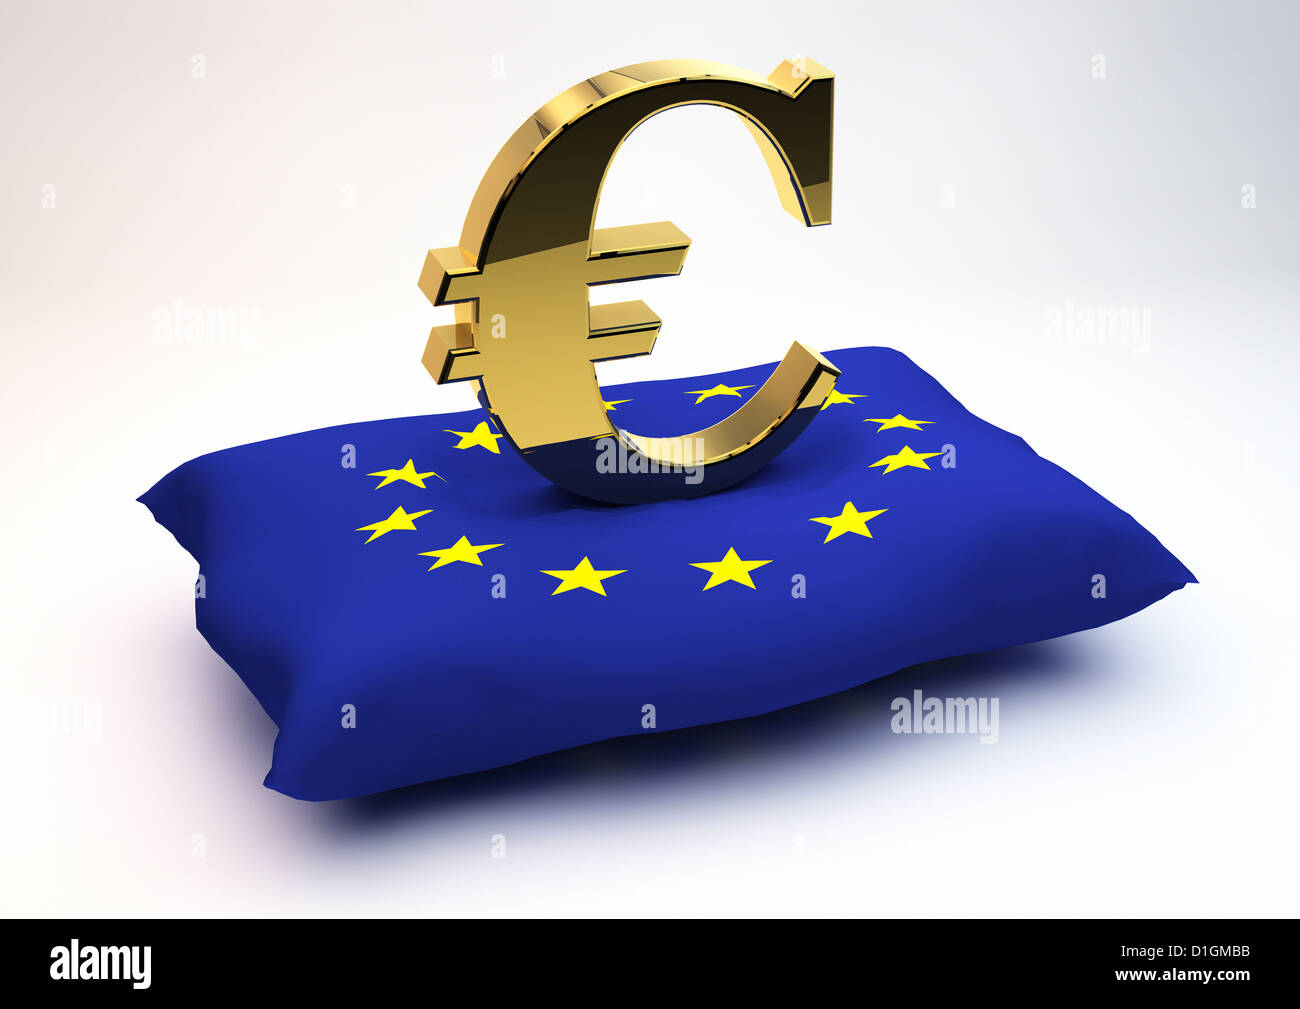 Solid Gold Euro Symbol sitzen auf einer Fahne der Europäischen Union gemusterten Kissen-concept Bild - 3D-Rendering Stockfoto